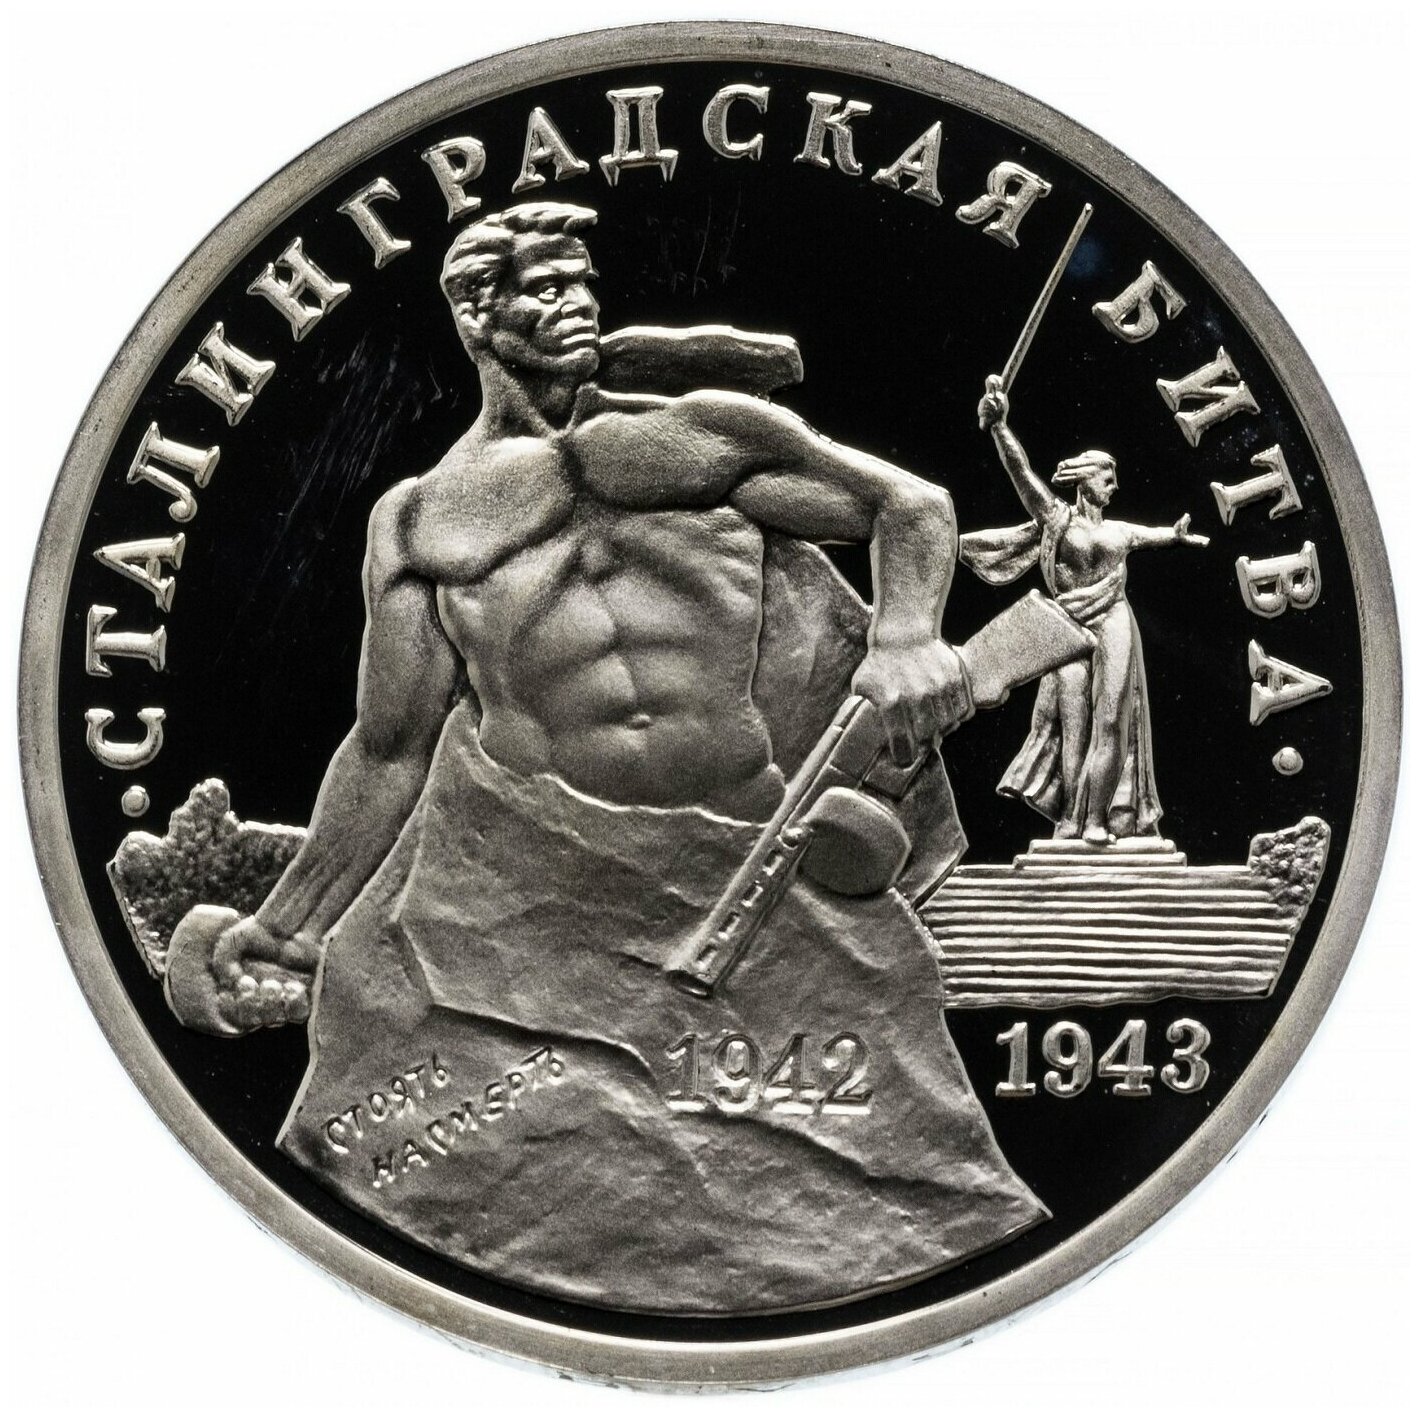 Памятная монета 3 рубля Сталинградская битва. Молодая Россия, Россия, 1993 г. в. Состояние Proof (полированная)